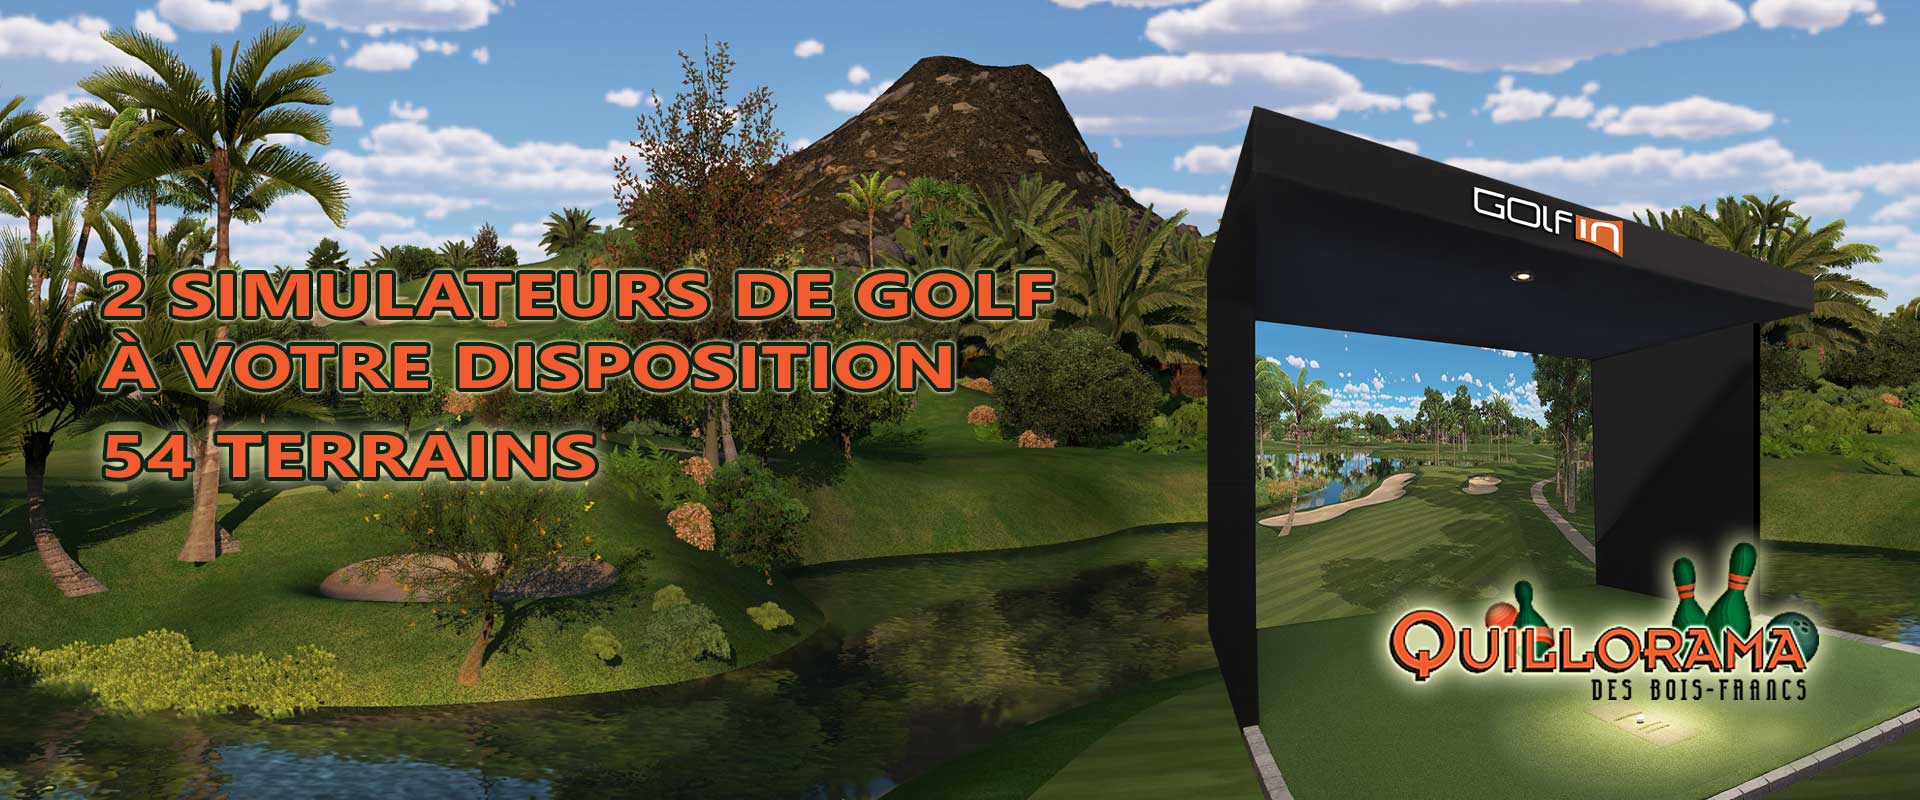 Golf virtuel Quillorama des Bois-Francs